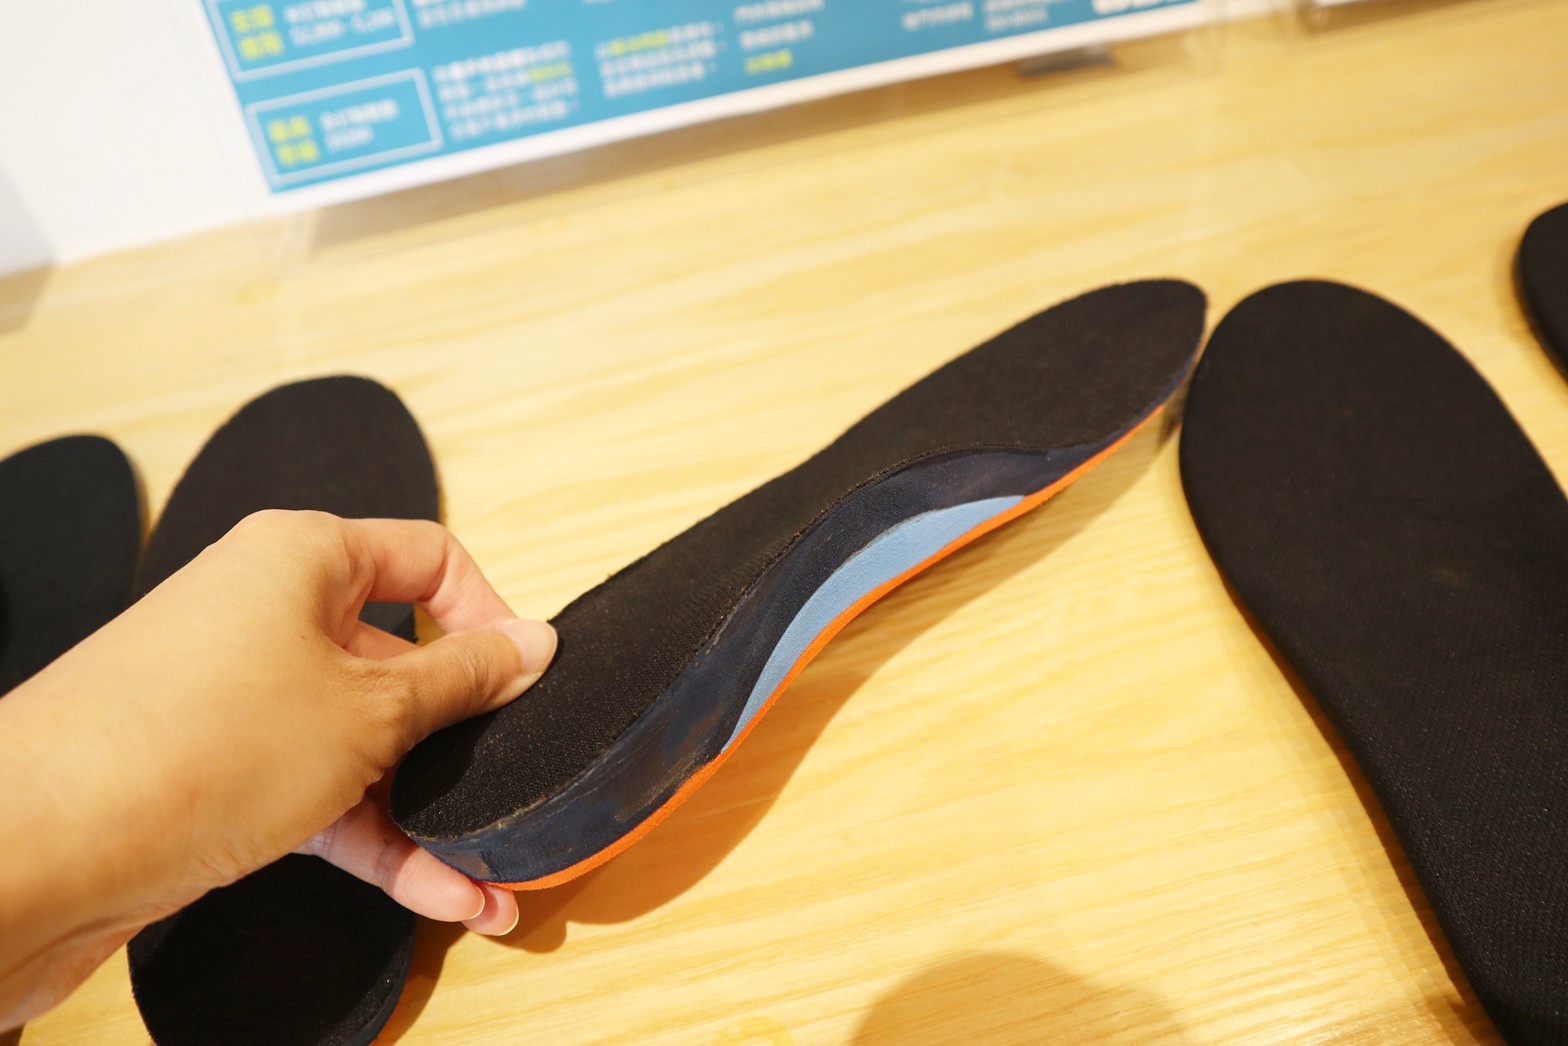 『台南鞋墊』推薦走四方訂製鞋墊，物理治療師檢測諮詢後再訂製出最適合自己平常適合走動的鞋墊。